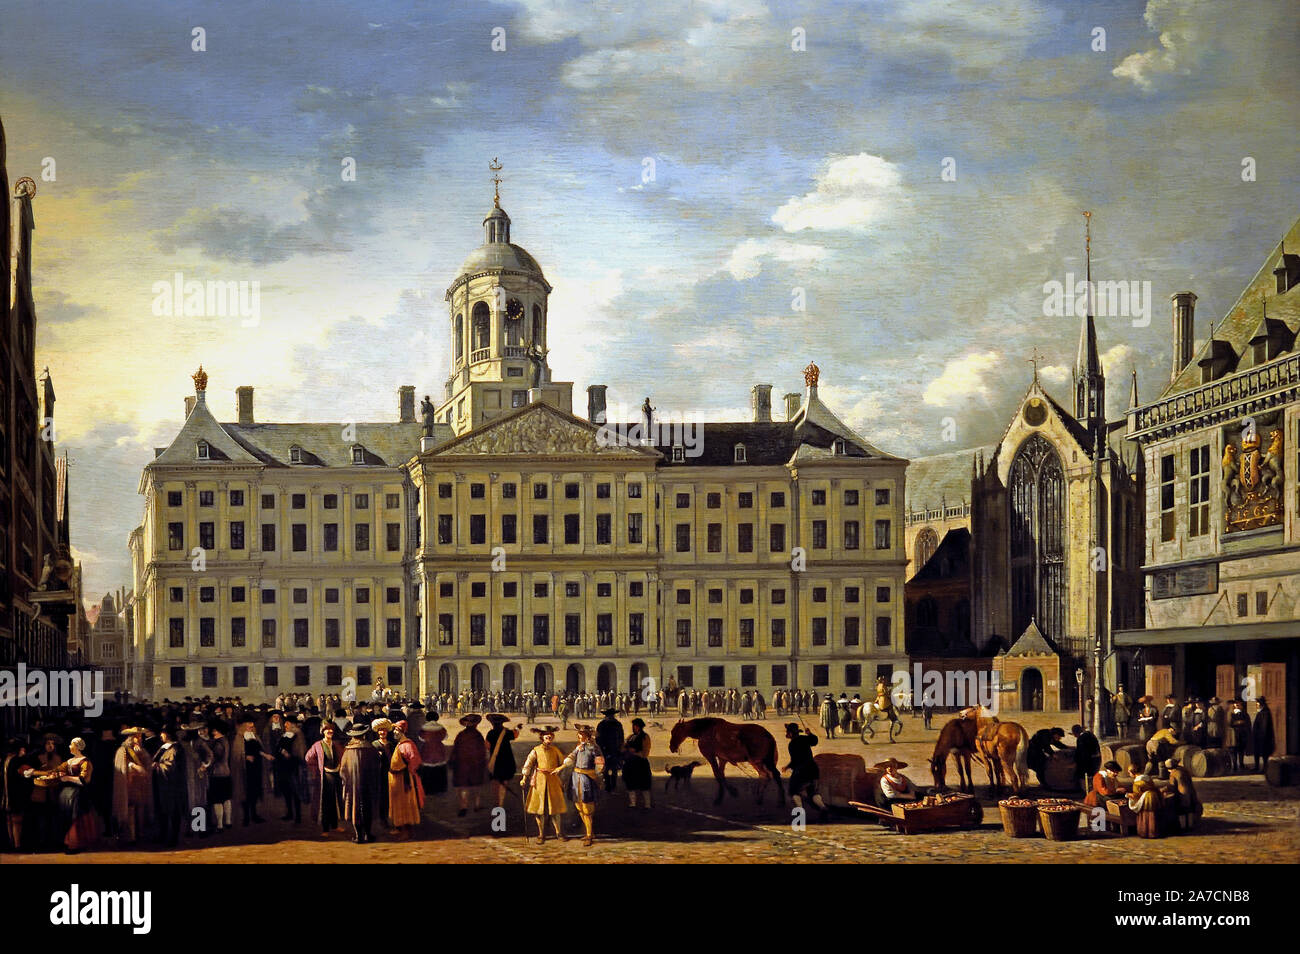 L'hôtel de ville sur la place du Dam, Amsterdam, 1672 par Gerrit Adriaensz. Berckheyde 1638-1698 , les Pays-Bas, le néerlandais, l'Hollande. (L'hôtel de ville d'Amsterdam (aujourd'hui le Palais Royal) sur la place du Dam est considéré comme le plus important monument historique et culturel de l'âge d'Or hollandais. Le bâtiment symbolise la formidable croissance et développement que la ville a connu au cours du 17e siècle. Gerrit Berckheyde ici dépeint la mairie dans toute sa gloire, tout en transmettant l'agitation de la place principale de la ville.) Banque D'Images